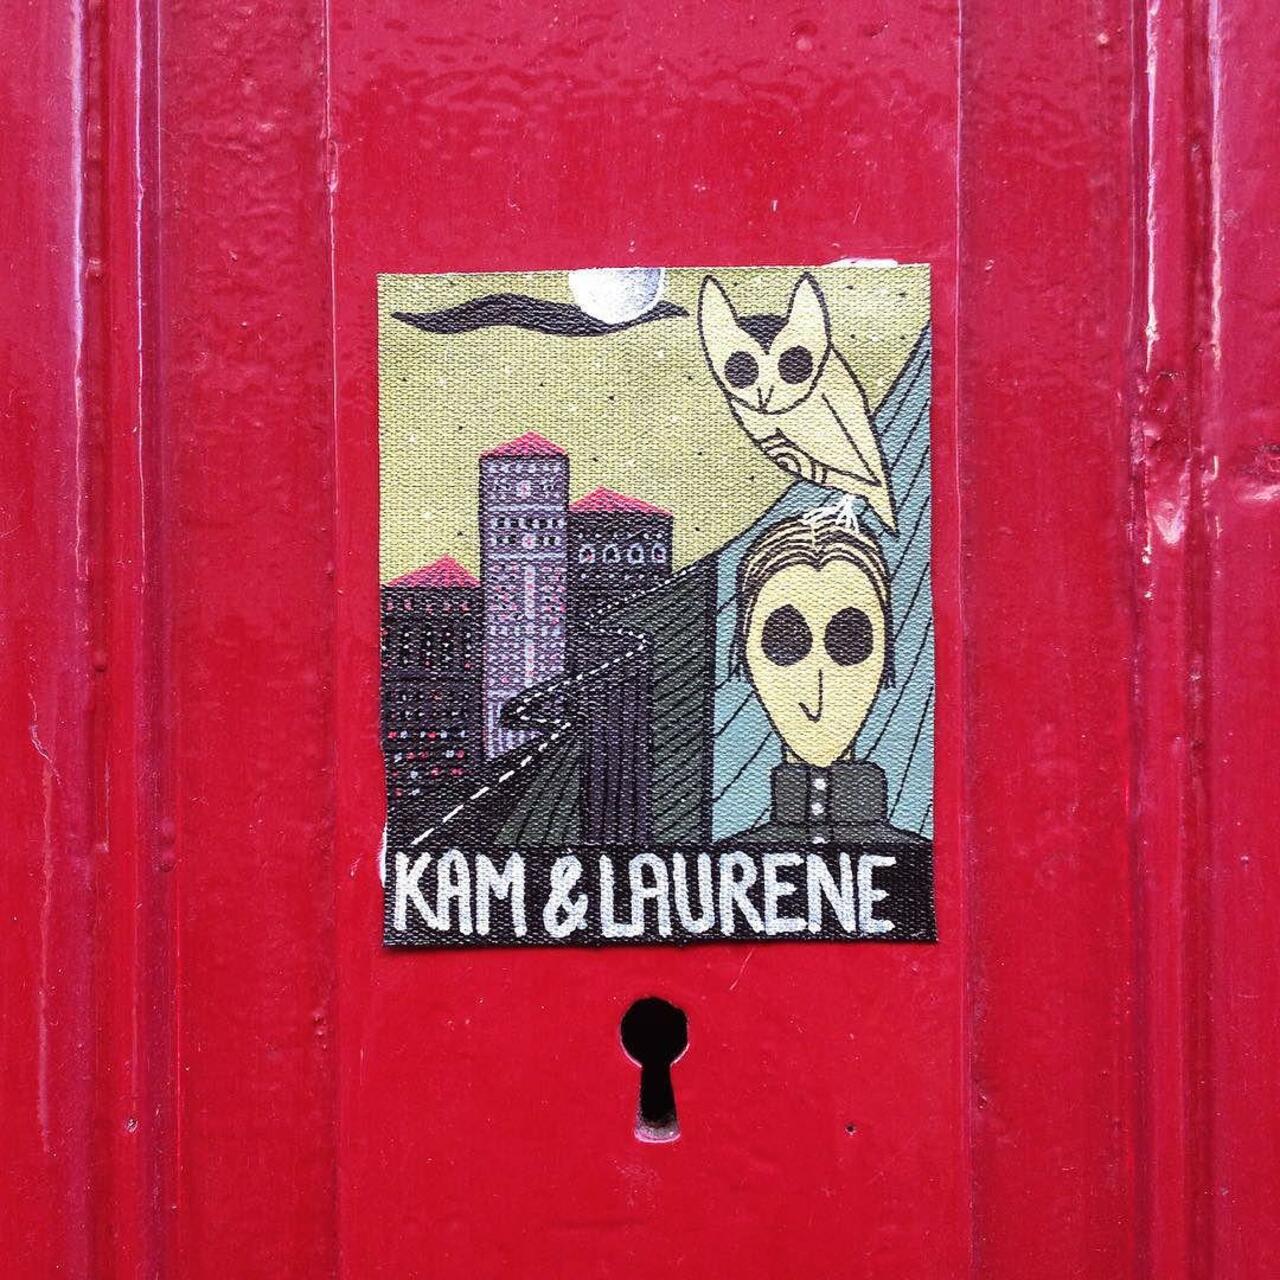 #Paris #graffiti photo by @kamlaurene http://ift.tt/1P69ODP #StreetArt http://t.co/HUp2IqLhF2